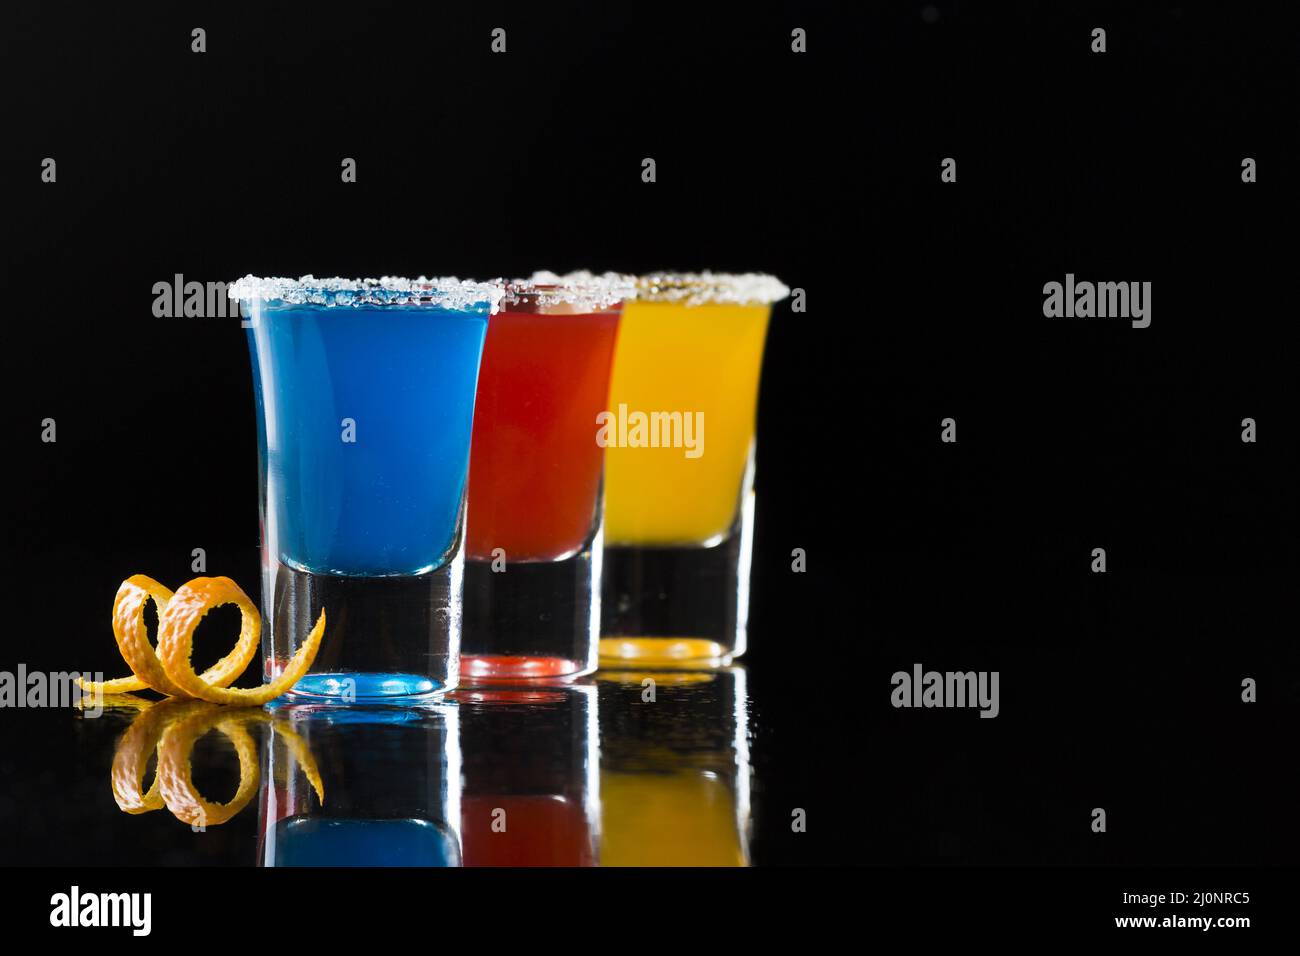 Drei Shot-Gläser mit Cocktails Coy Space. Hohe Qualität und Auflösung schönes Fotokonzept Stockfoto